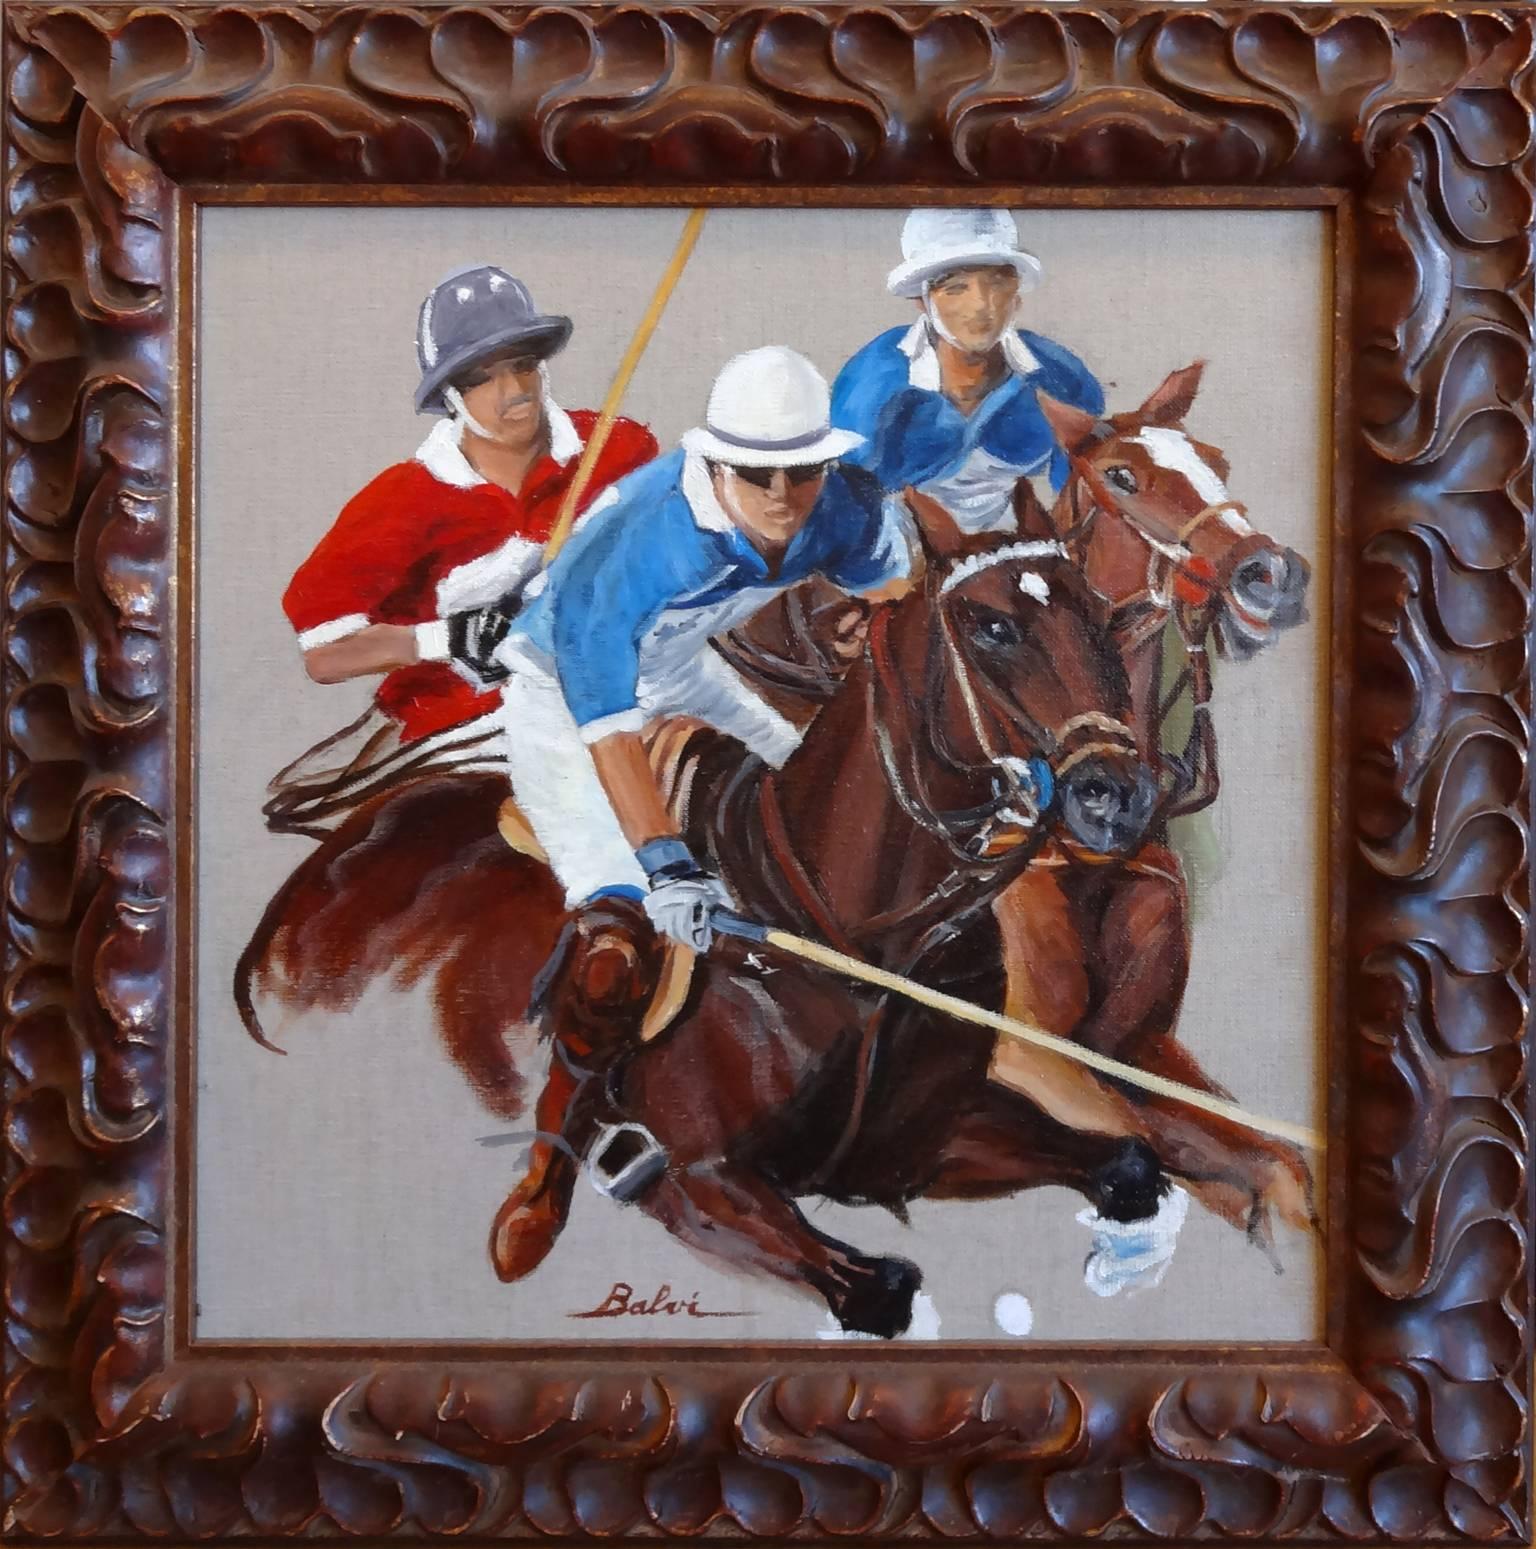 Polo en Action - Painting by Simone Balvi